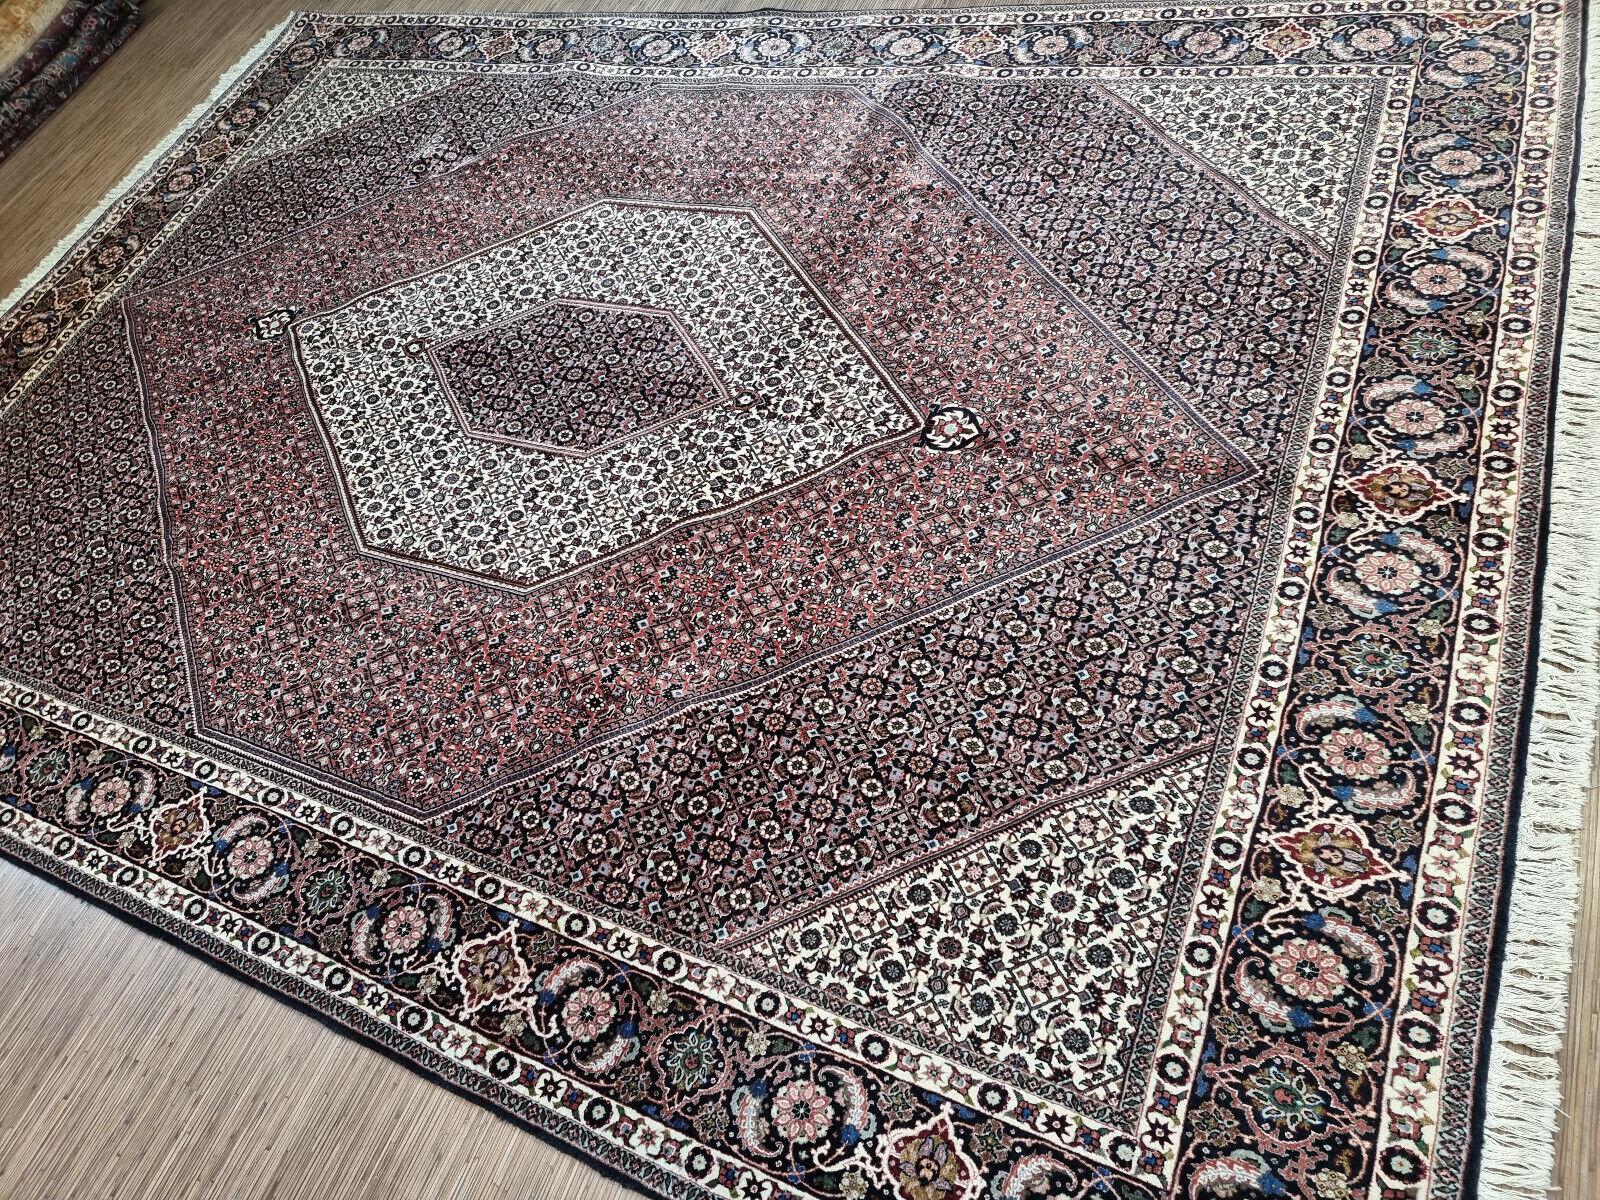 Wenn Sie auf der Suche nach einem Teppich sind, der Ihrem Wohnraum einen Hauch von Vintage-Eleganz verleiht, ist dieser handgefertigte Bidjar-Teppich im persischen Vintage-Stil genau das Richtige für Sie. Dieses atemberaubende Kunstwerk zeigt die